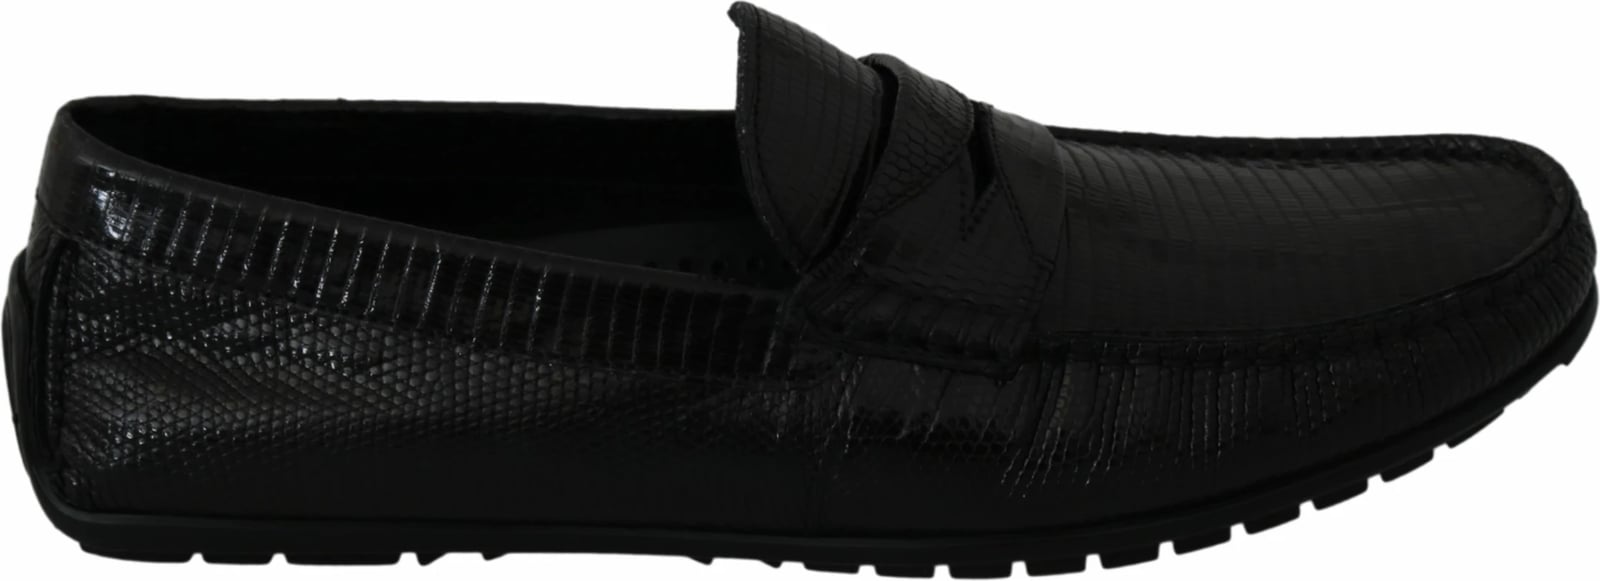 Këpucë për meshkuj Dolce & Gabbana, të zeza